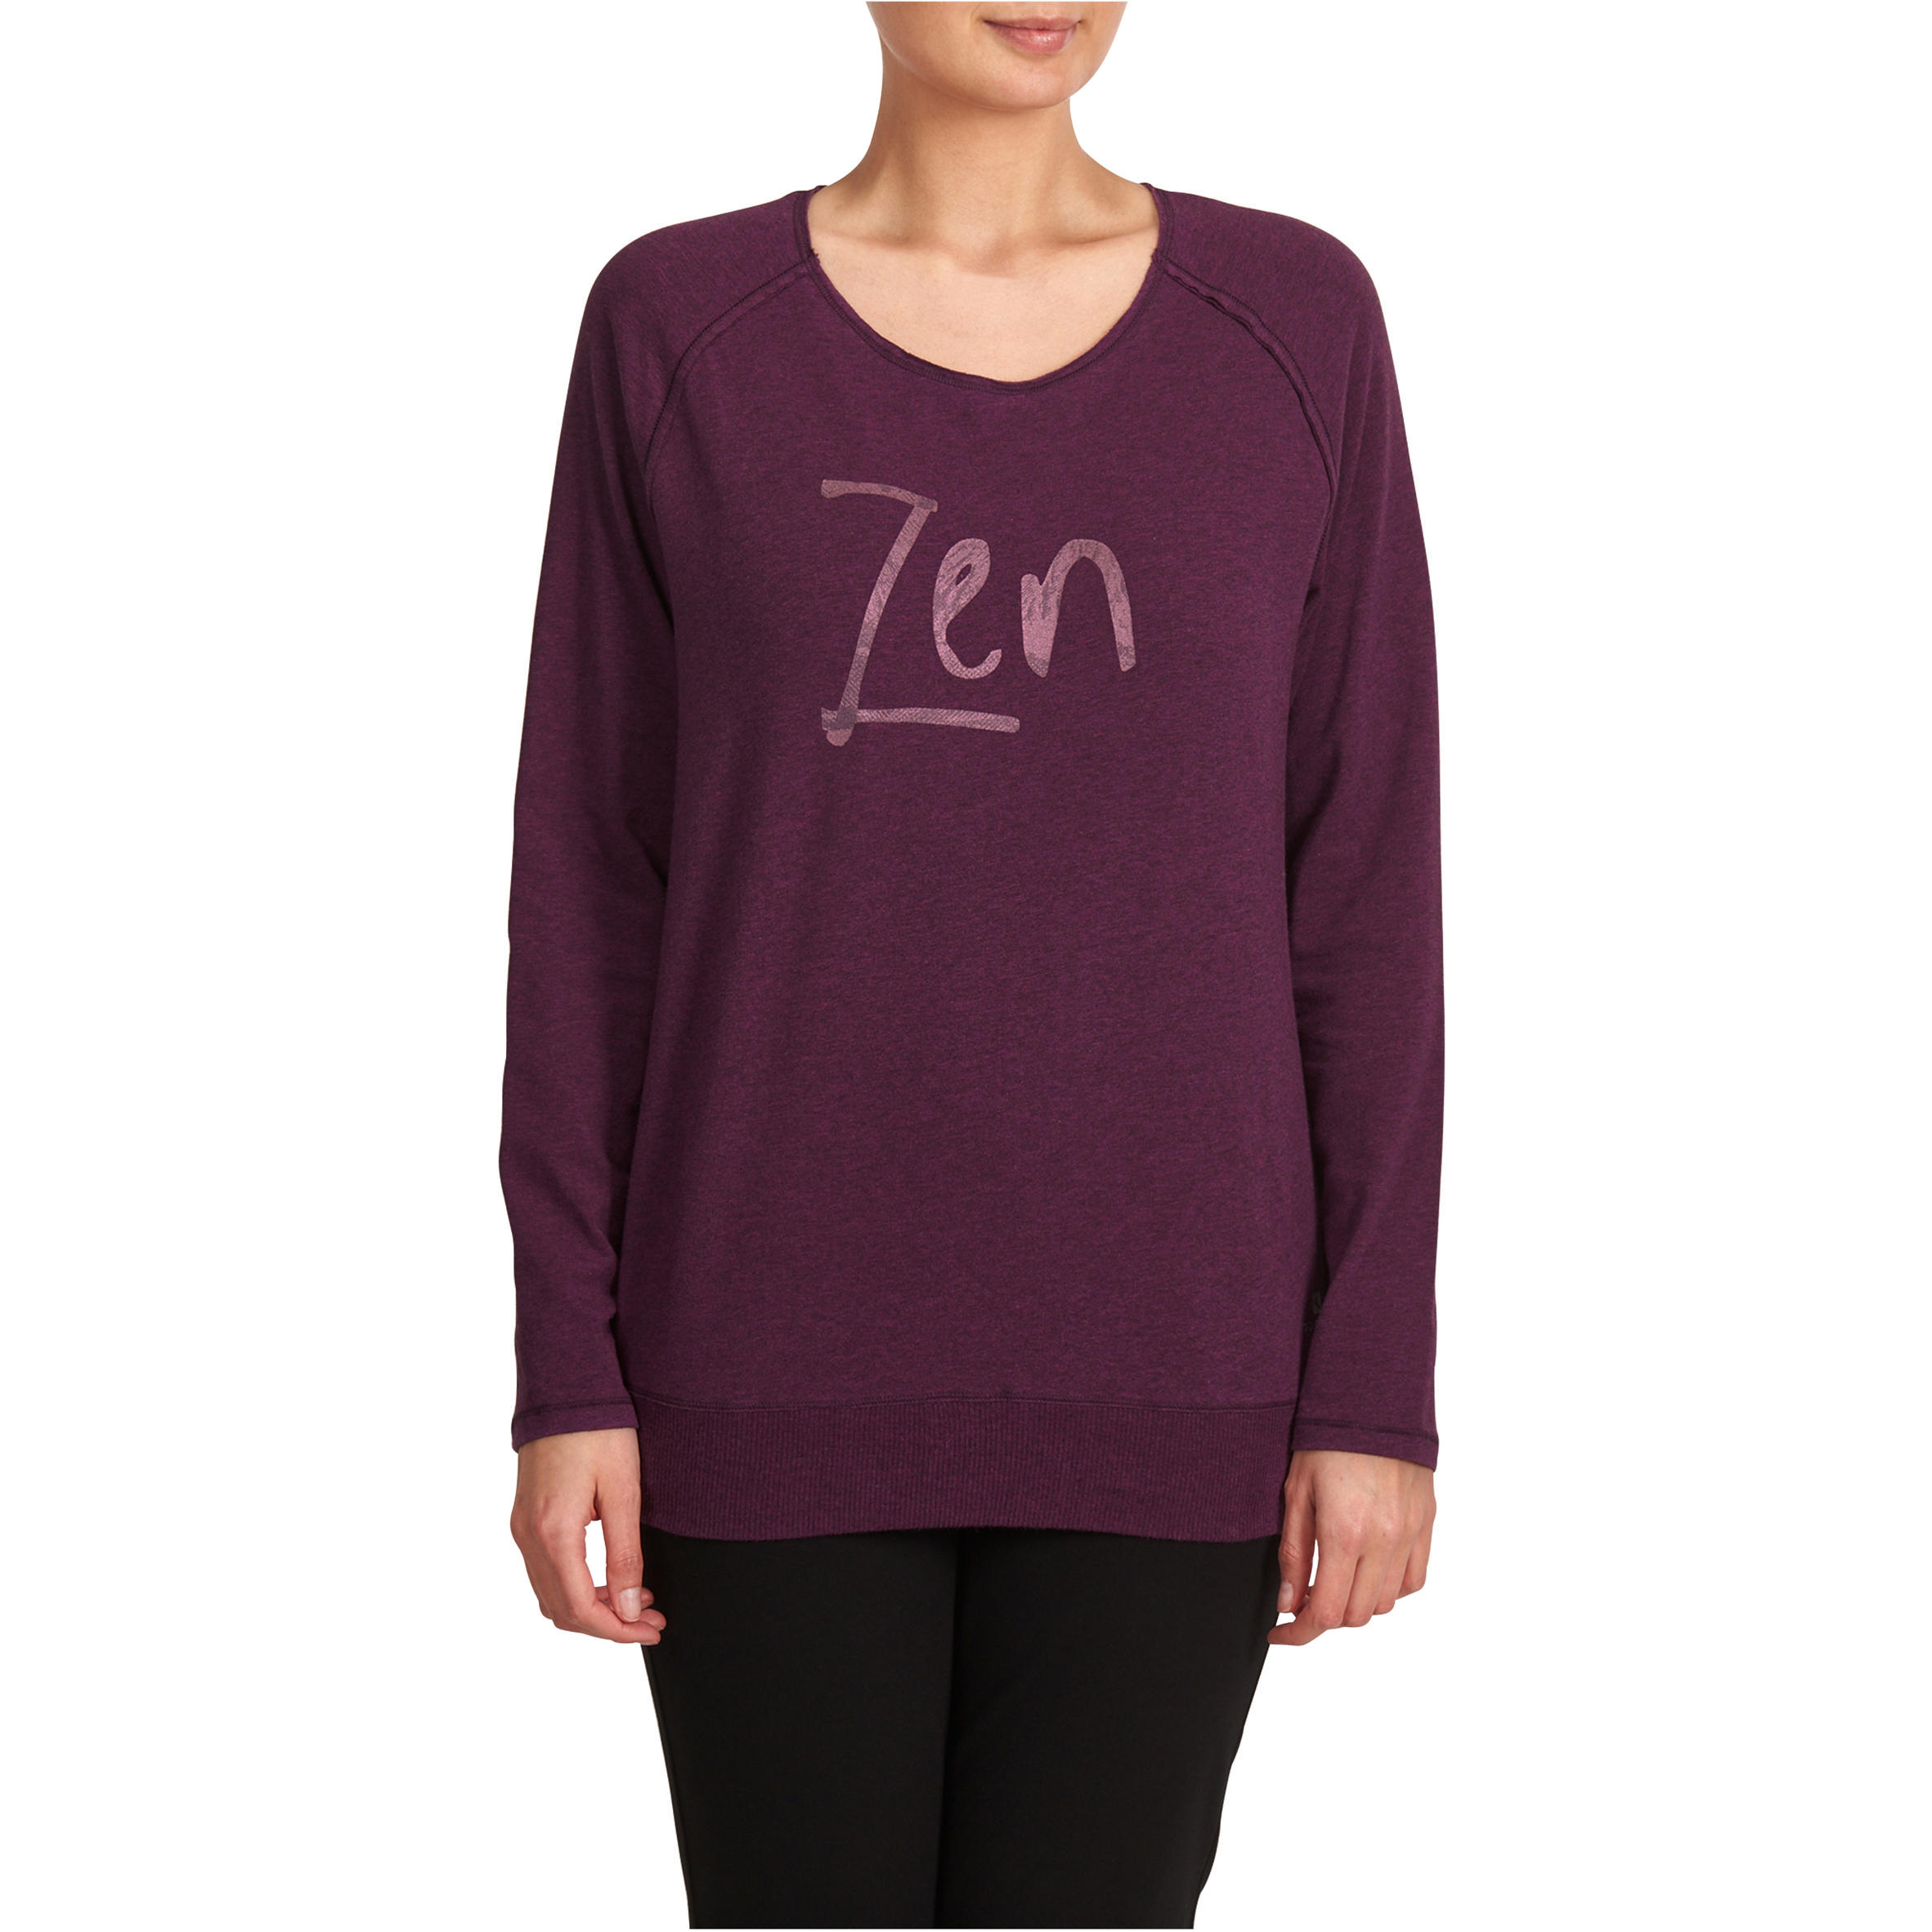 KIMJALY Women's Organic Cotton Long-Sleeved Yoga T-Shirt - Mottled Burgundy